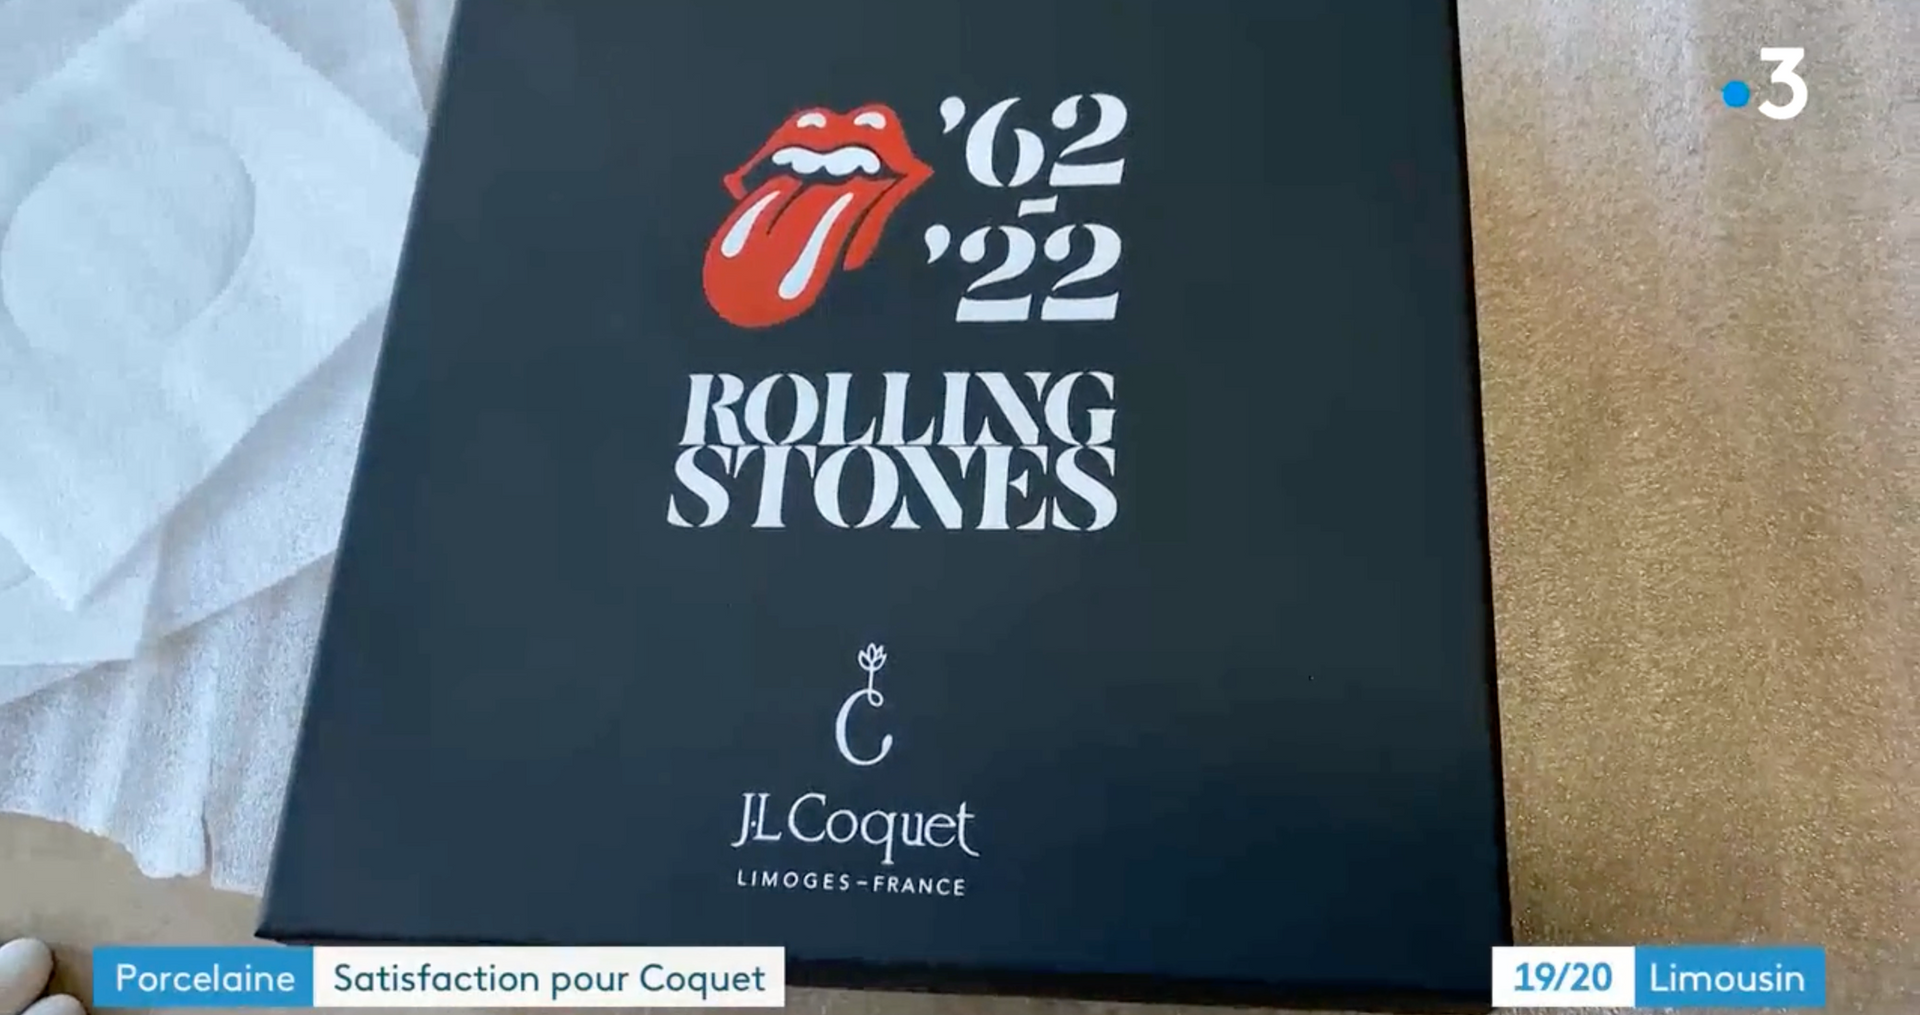 FRANCE INFO - J.L Coquet unveils a Rolling Stones box set